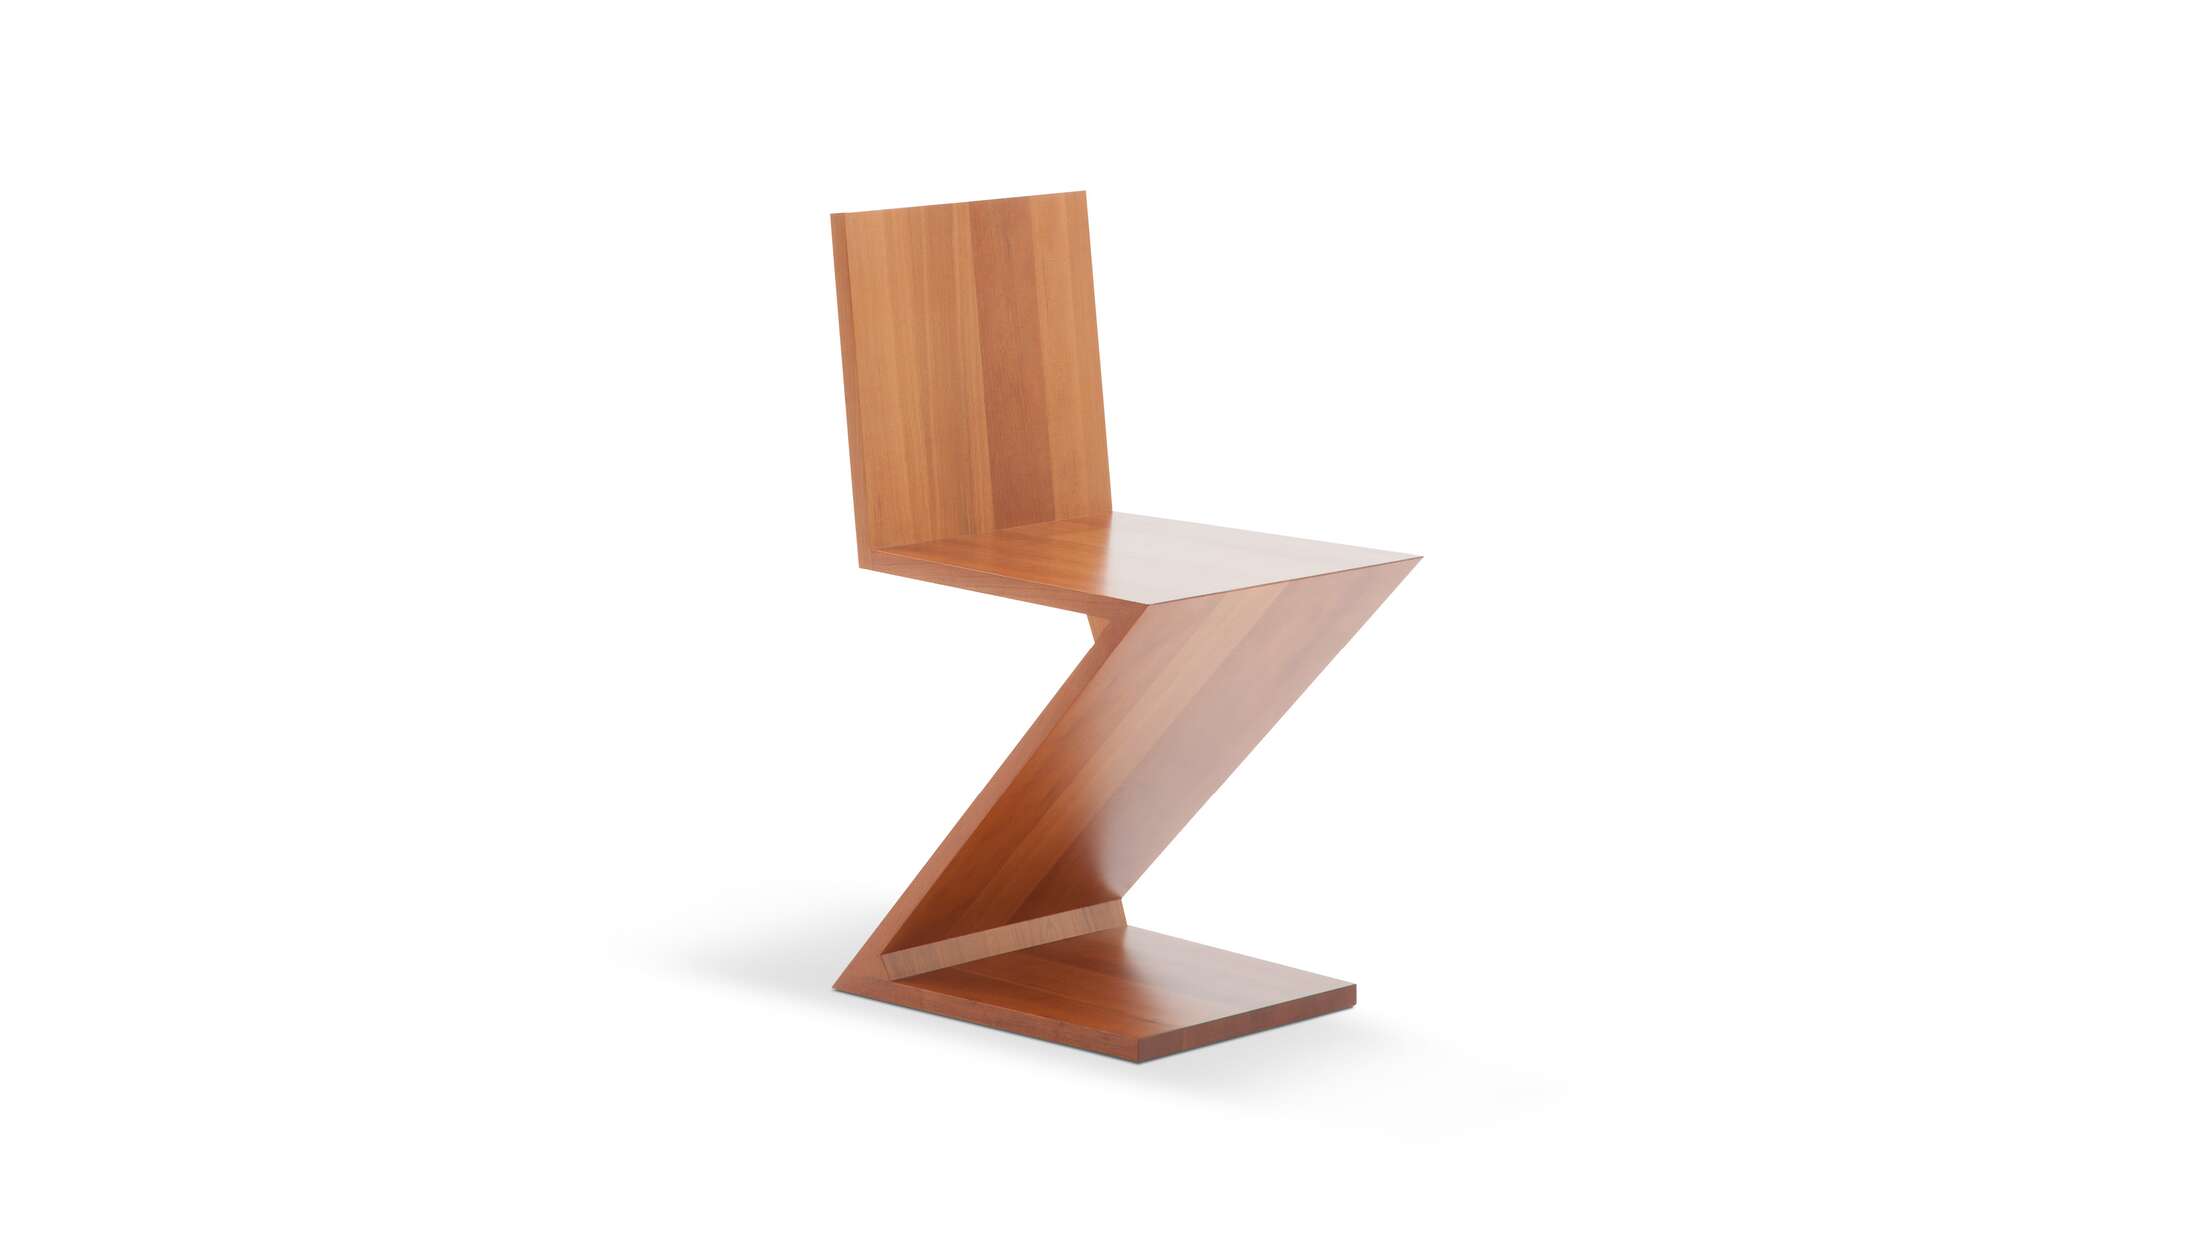 Der Preis richtet sich nach dem gewählten MATERIAL/der gewählten Farbe. Stuhl, entworfen von Gerrit Thomas Rietveld im Jahr 1934. Neuauflage 1973/ 2011. Hergestellt von Cassina in Italien. 